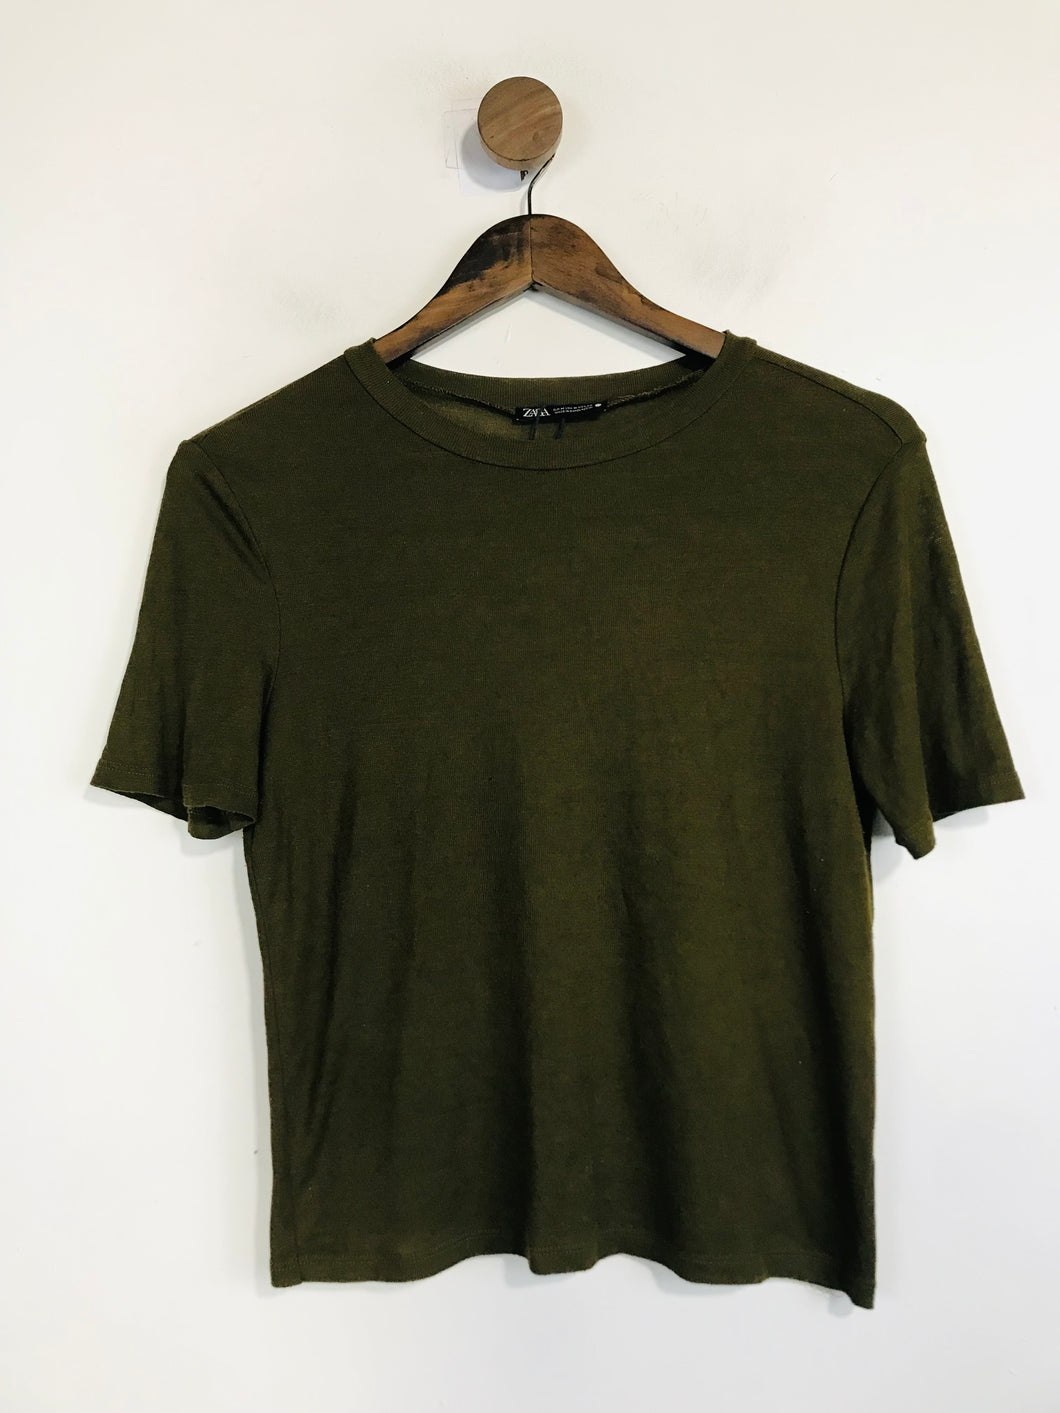 Zara Women's T-Shirt | M UK10-12 | Green